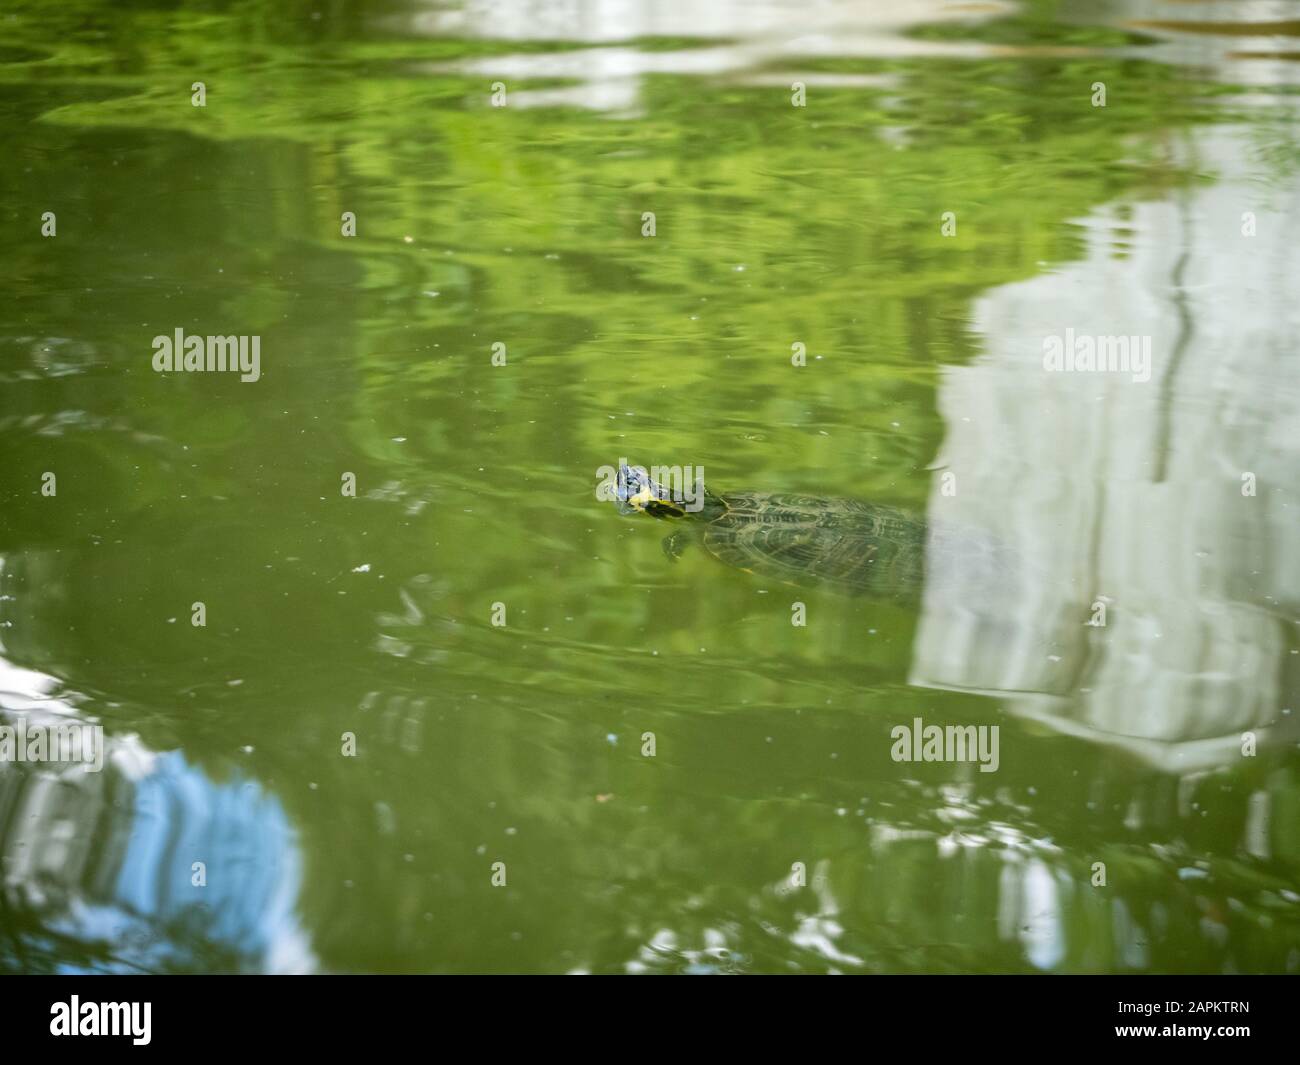 Tartaruga acquatica che nuota in un lago sporco in un parco durante il giorno Foto Stock